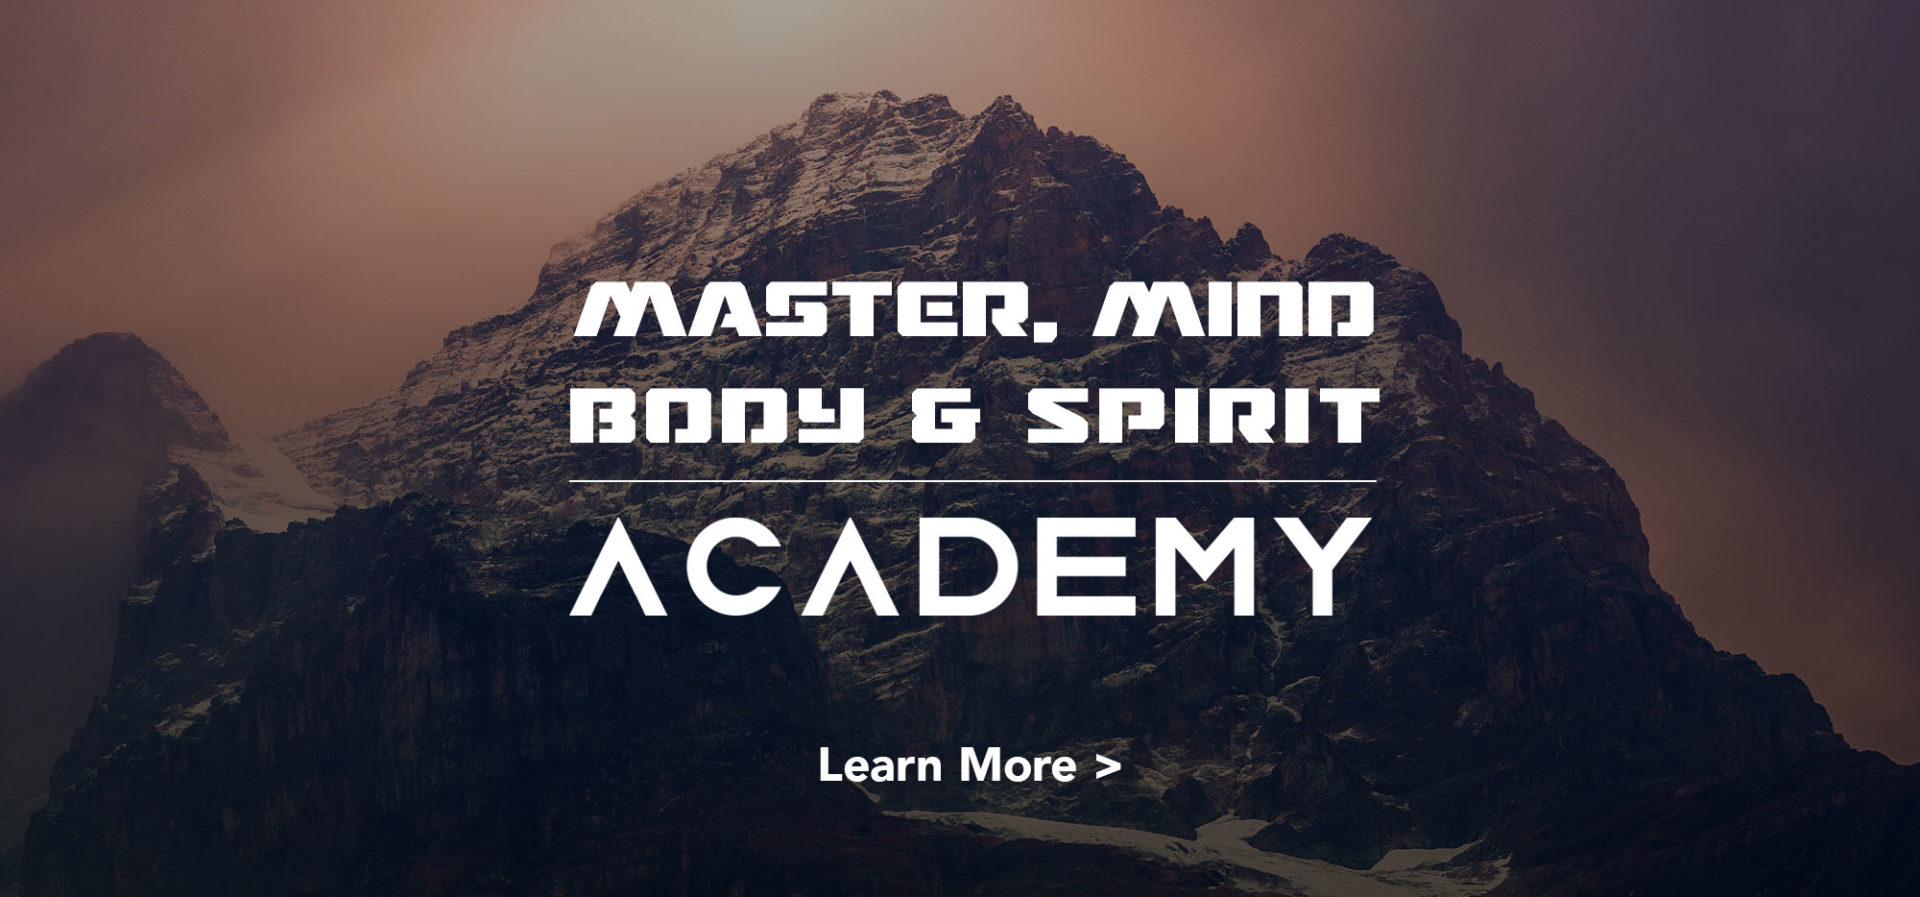 Master Mind, Body, Spirit Academy with Matt Belair